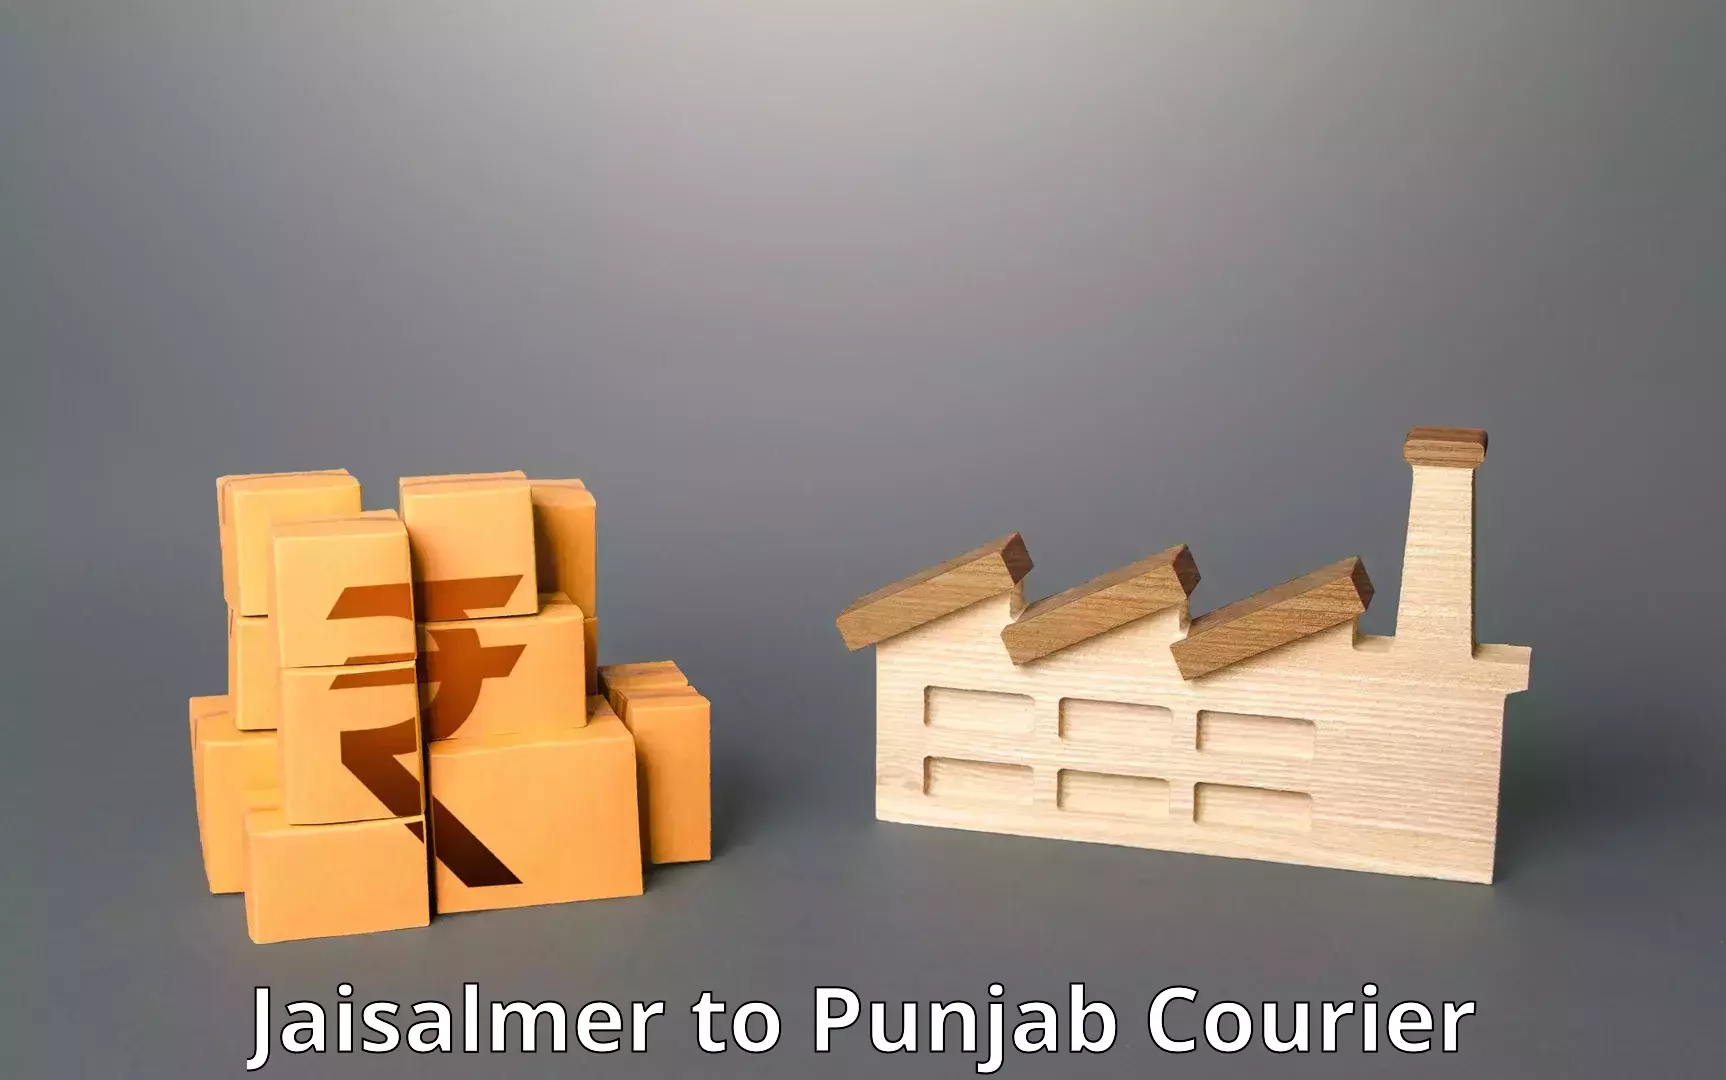 Efficient order fulfillment Jaisalmer to Muktsar